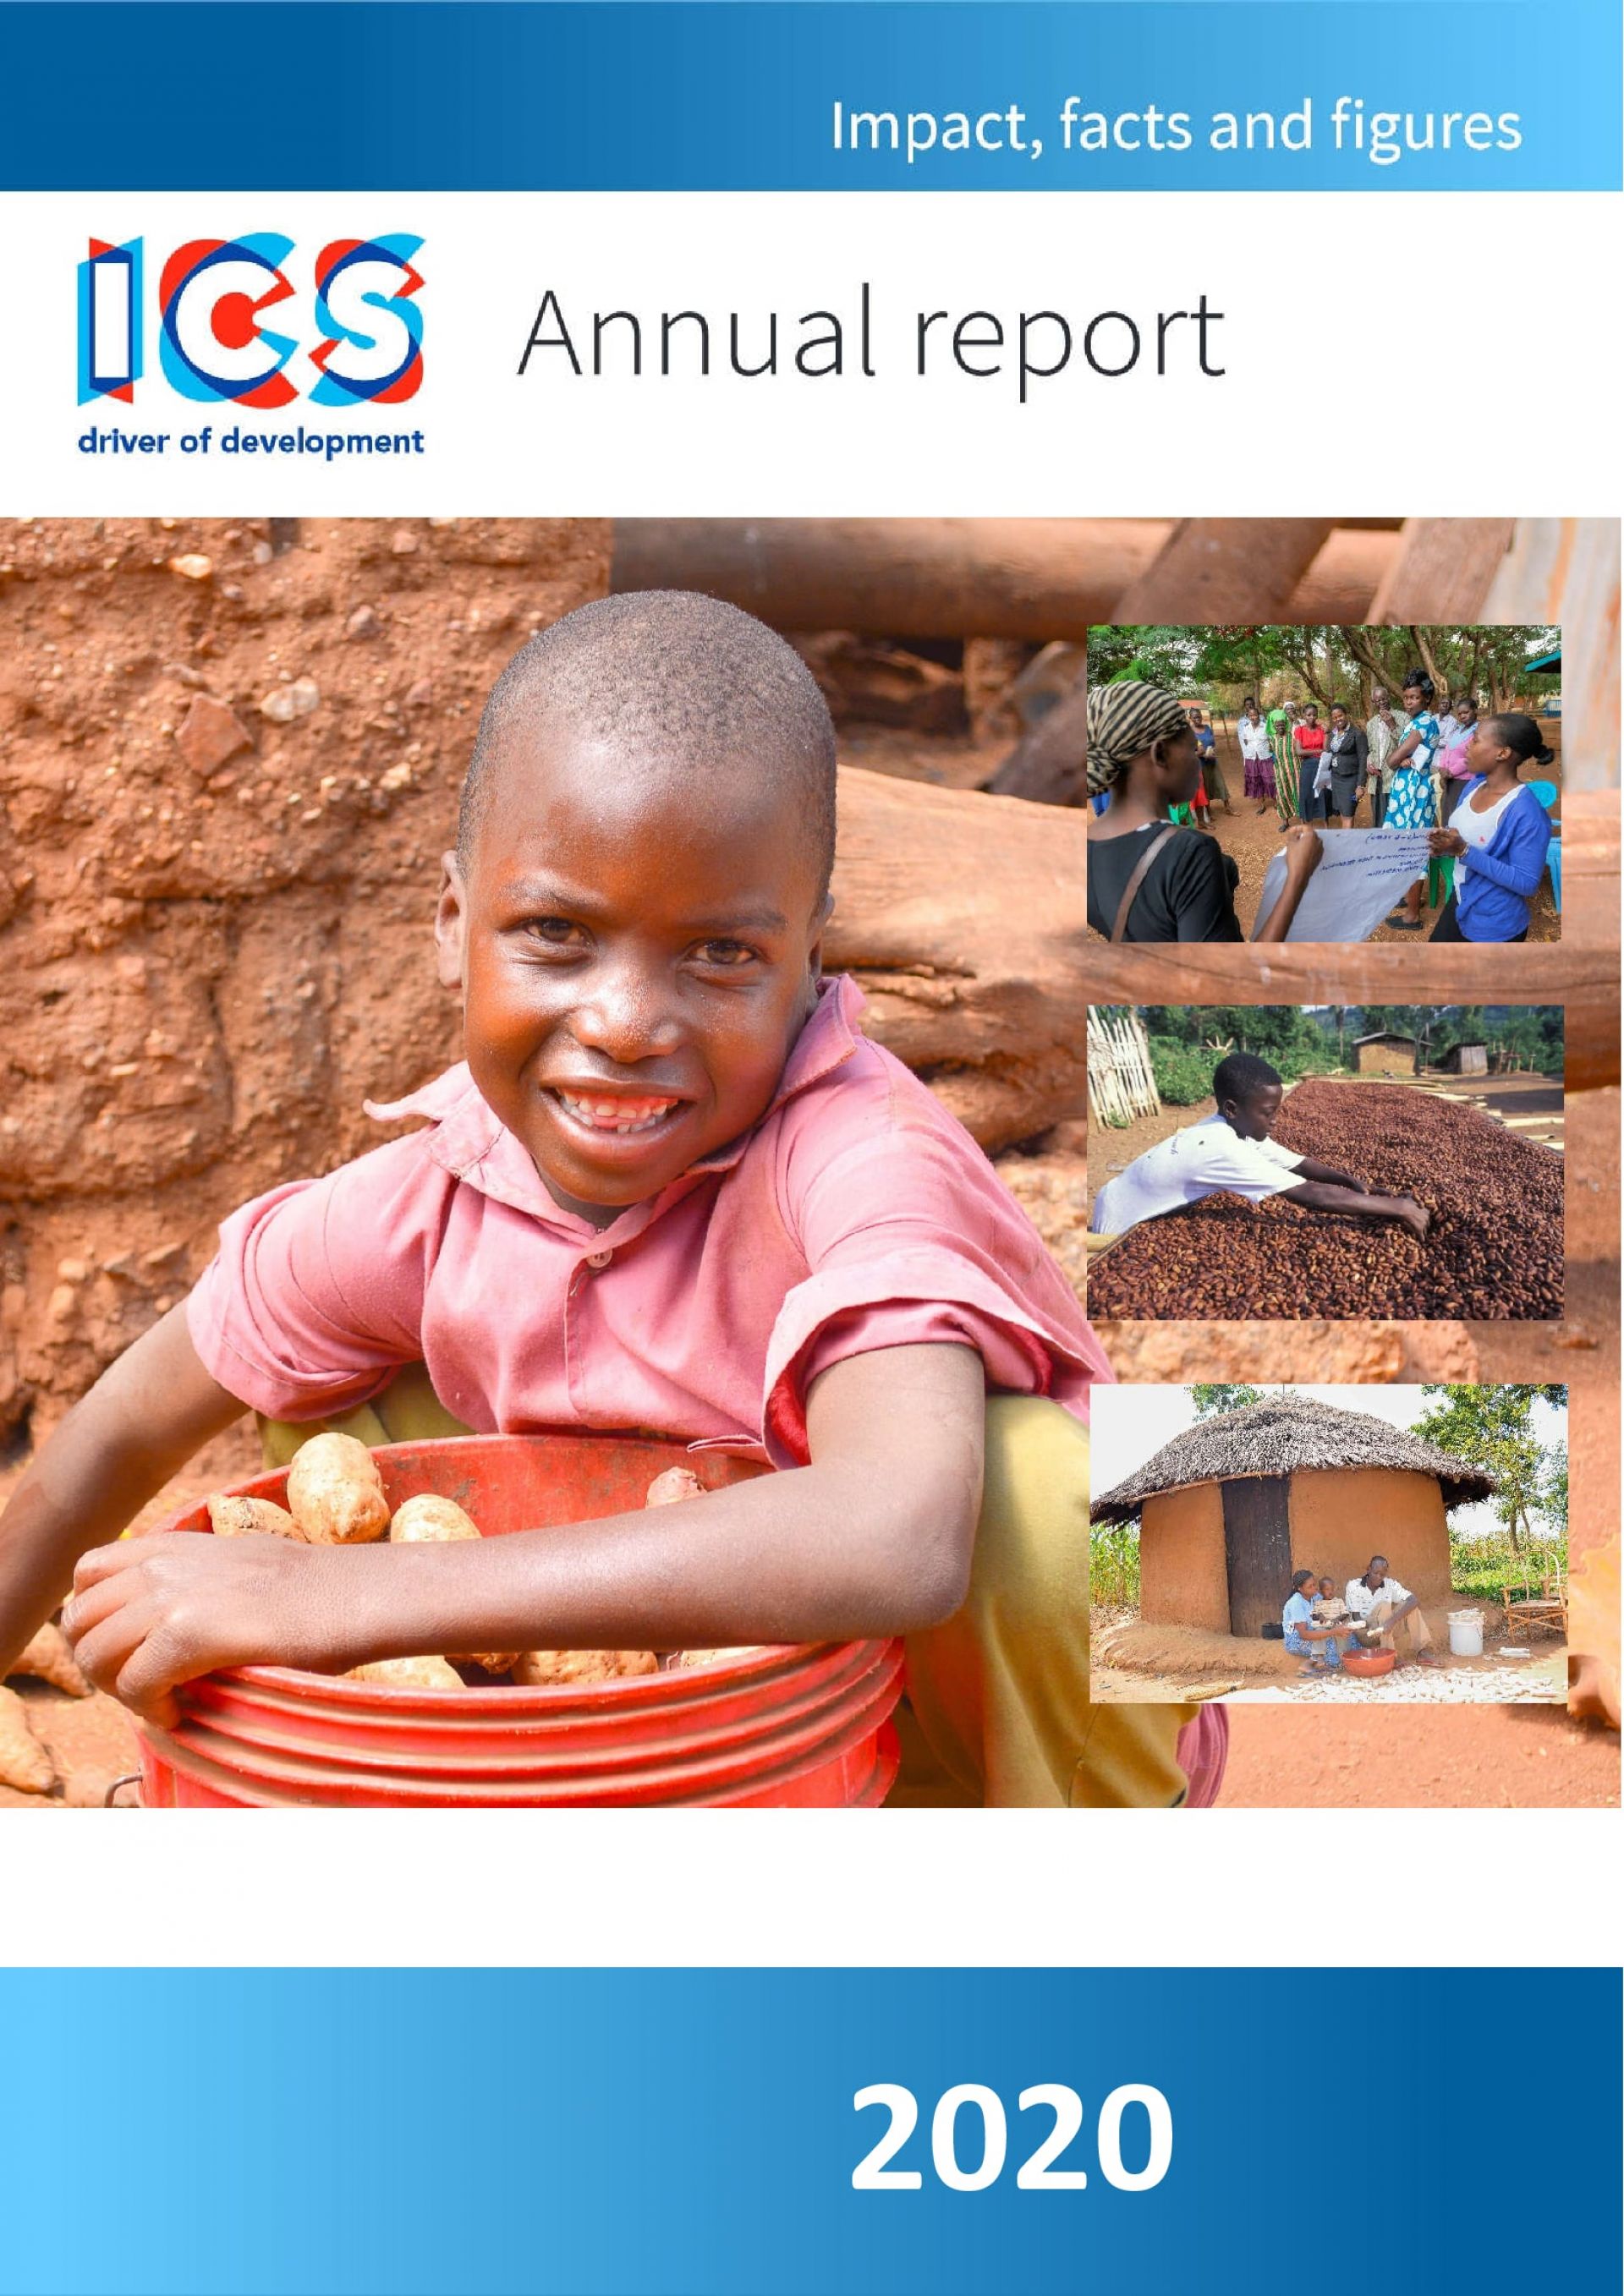 Jaarverslag-ICS-2020-cover-min.jpg